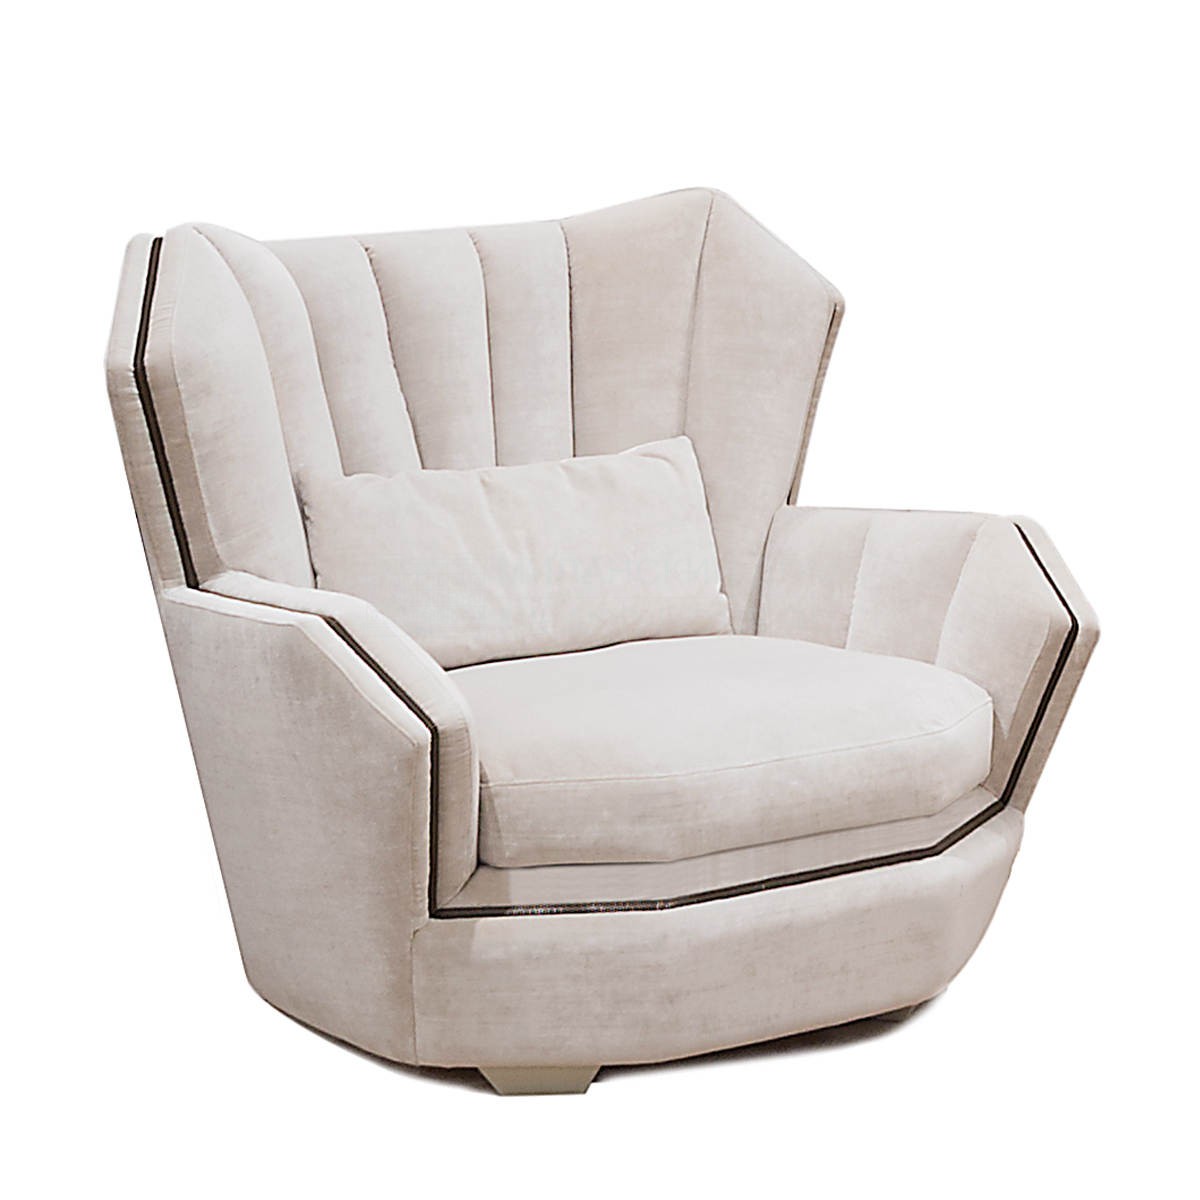 Кресло Hemingway armchair из Италии фабрики IPE CAVALLI VISIONNAIRE